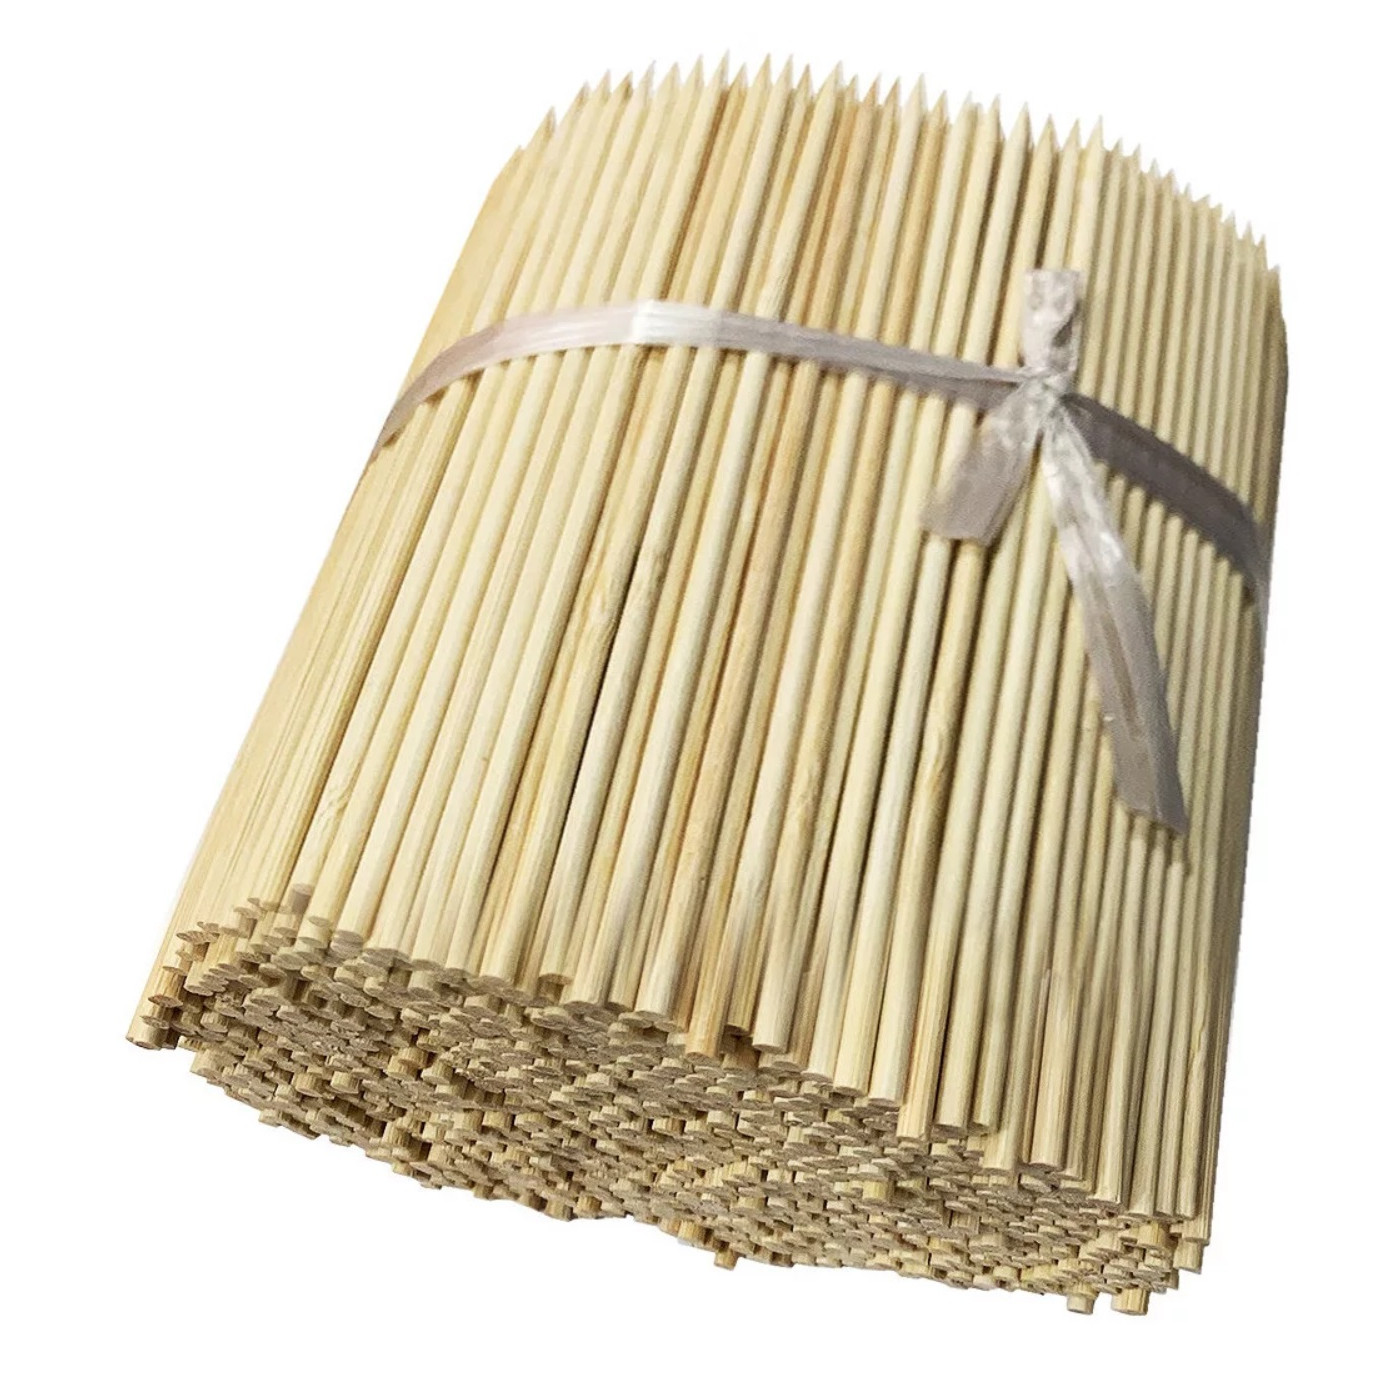 Sæt med 1000 korte bambuspinde (2,5 mm x 15 cm, spidse på den